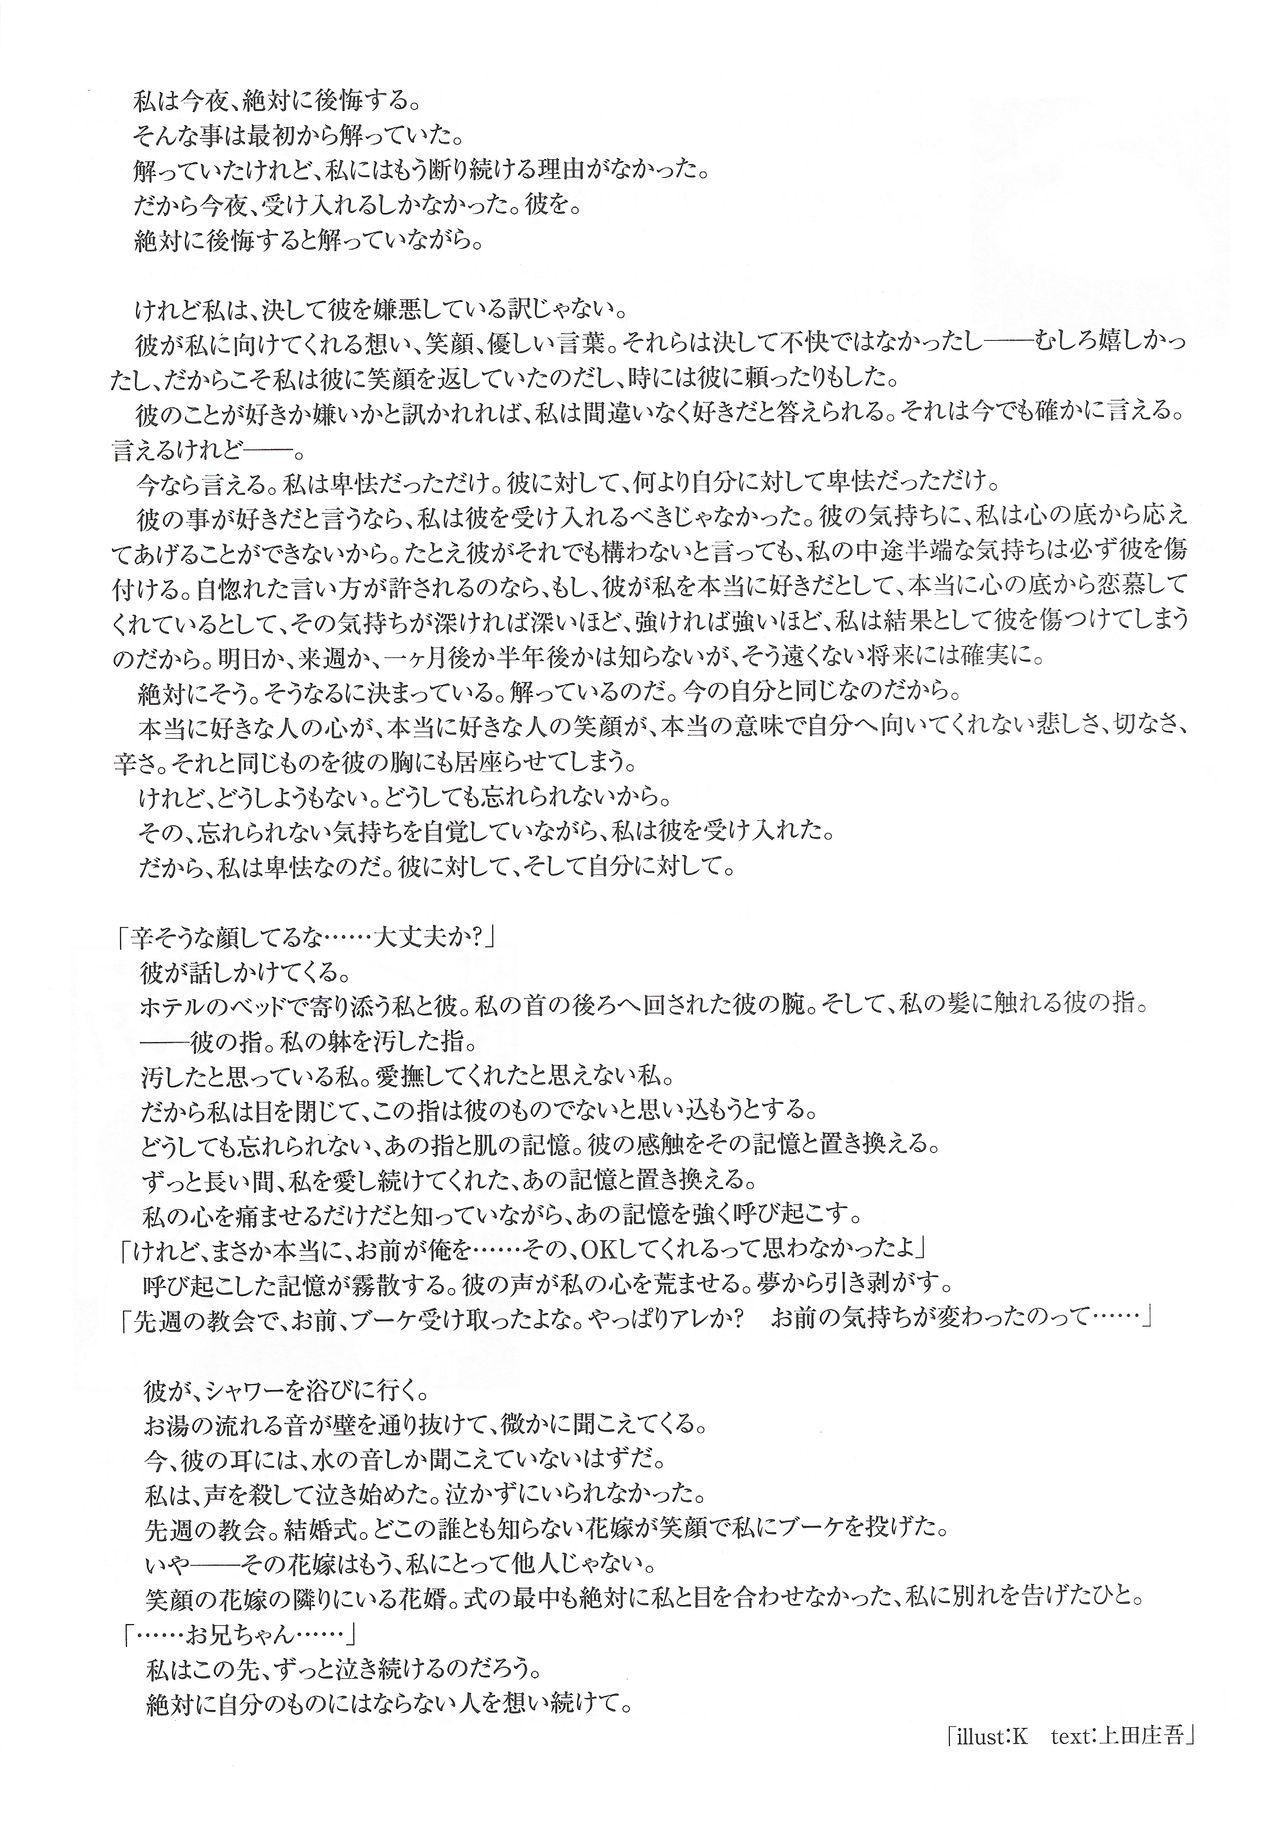 Arisu no Denchi Bakudan Vol. 18 23